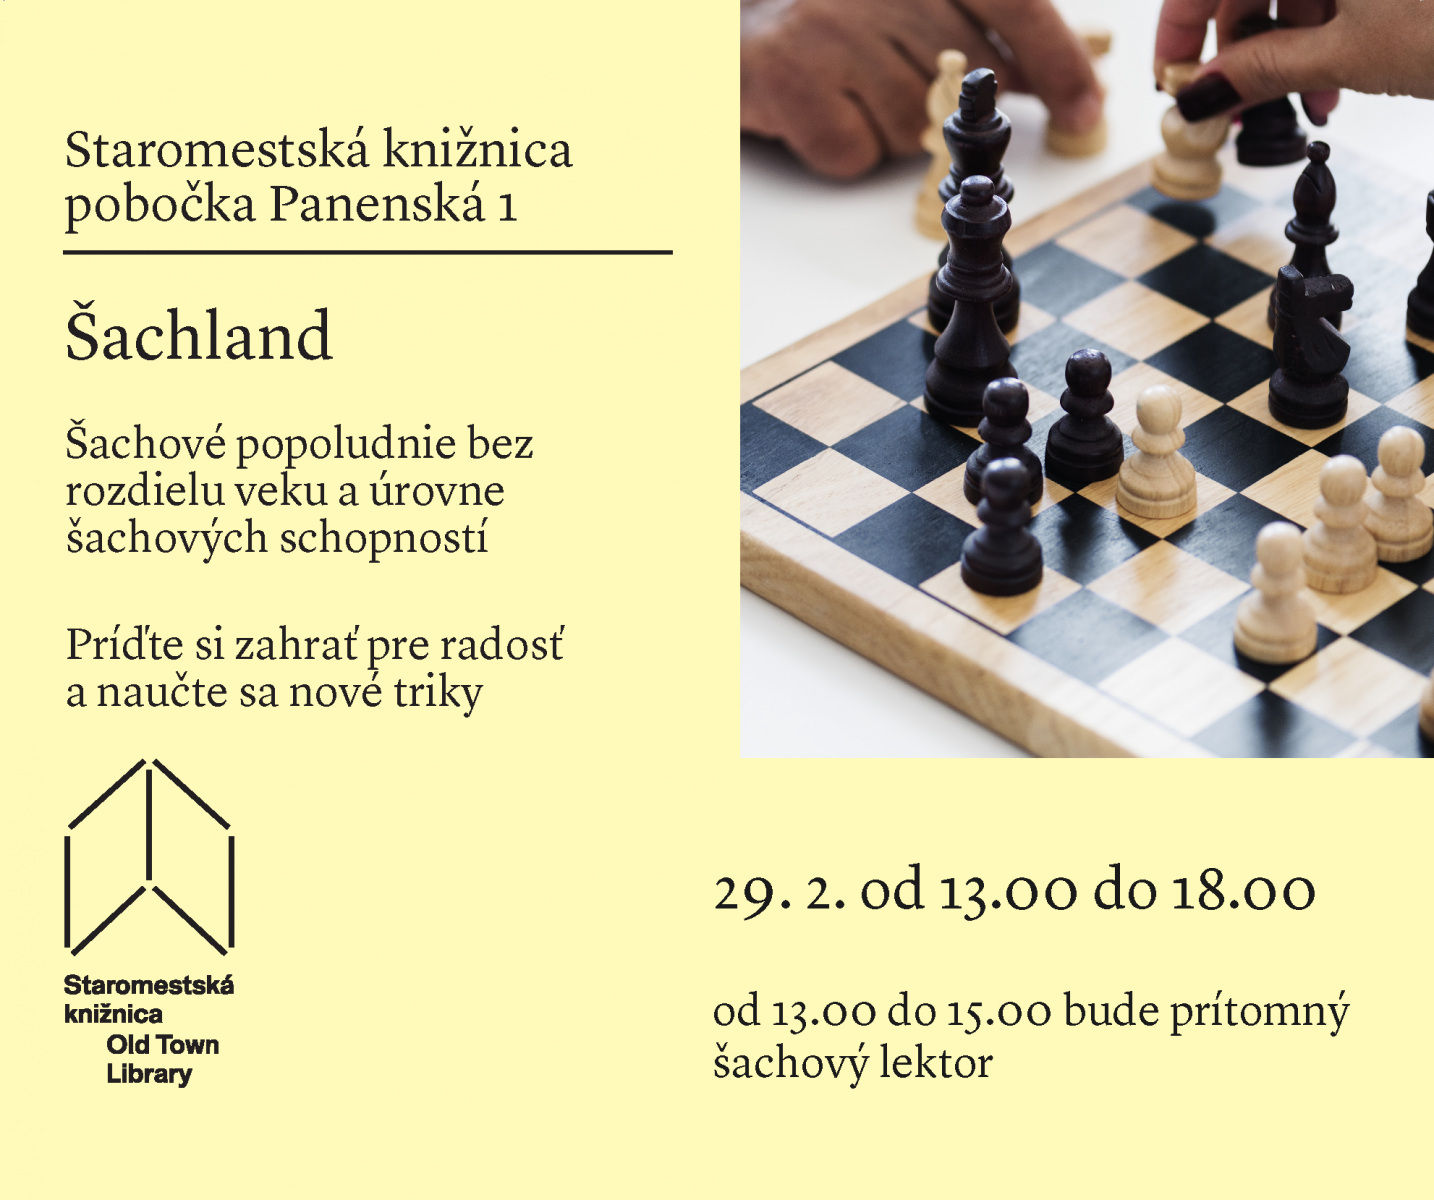 Šachové popoludnia vo štvrtok 29. februára od 13.00 do 18.00 v Staromestskej knižnici na Panenskej 1.